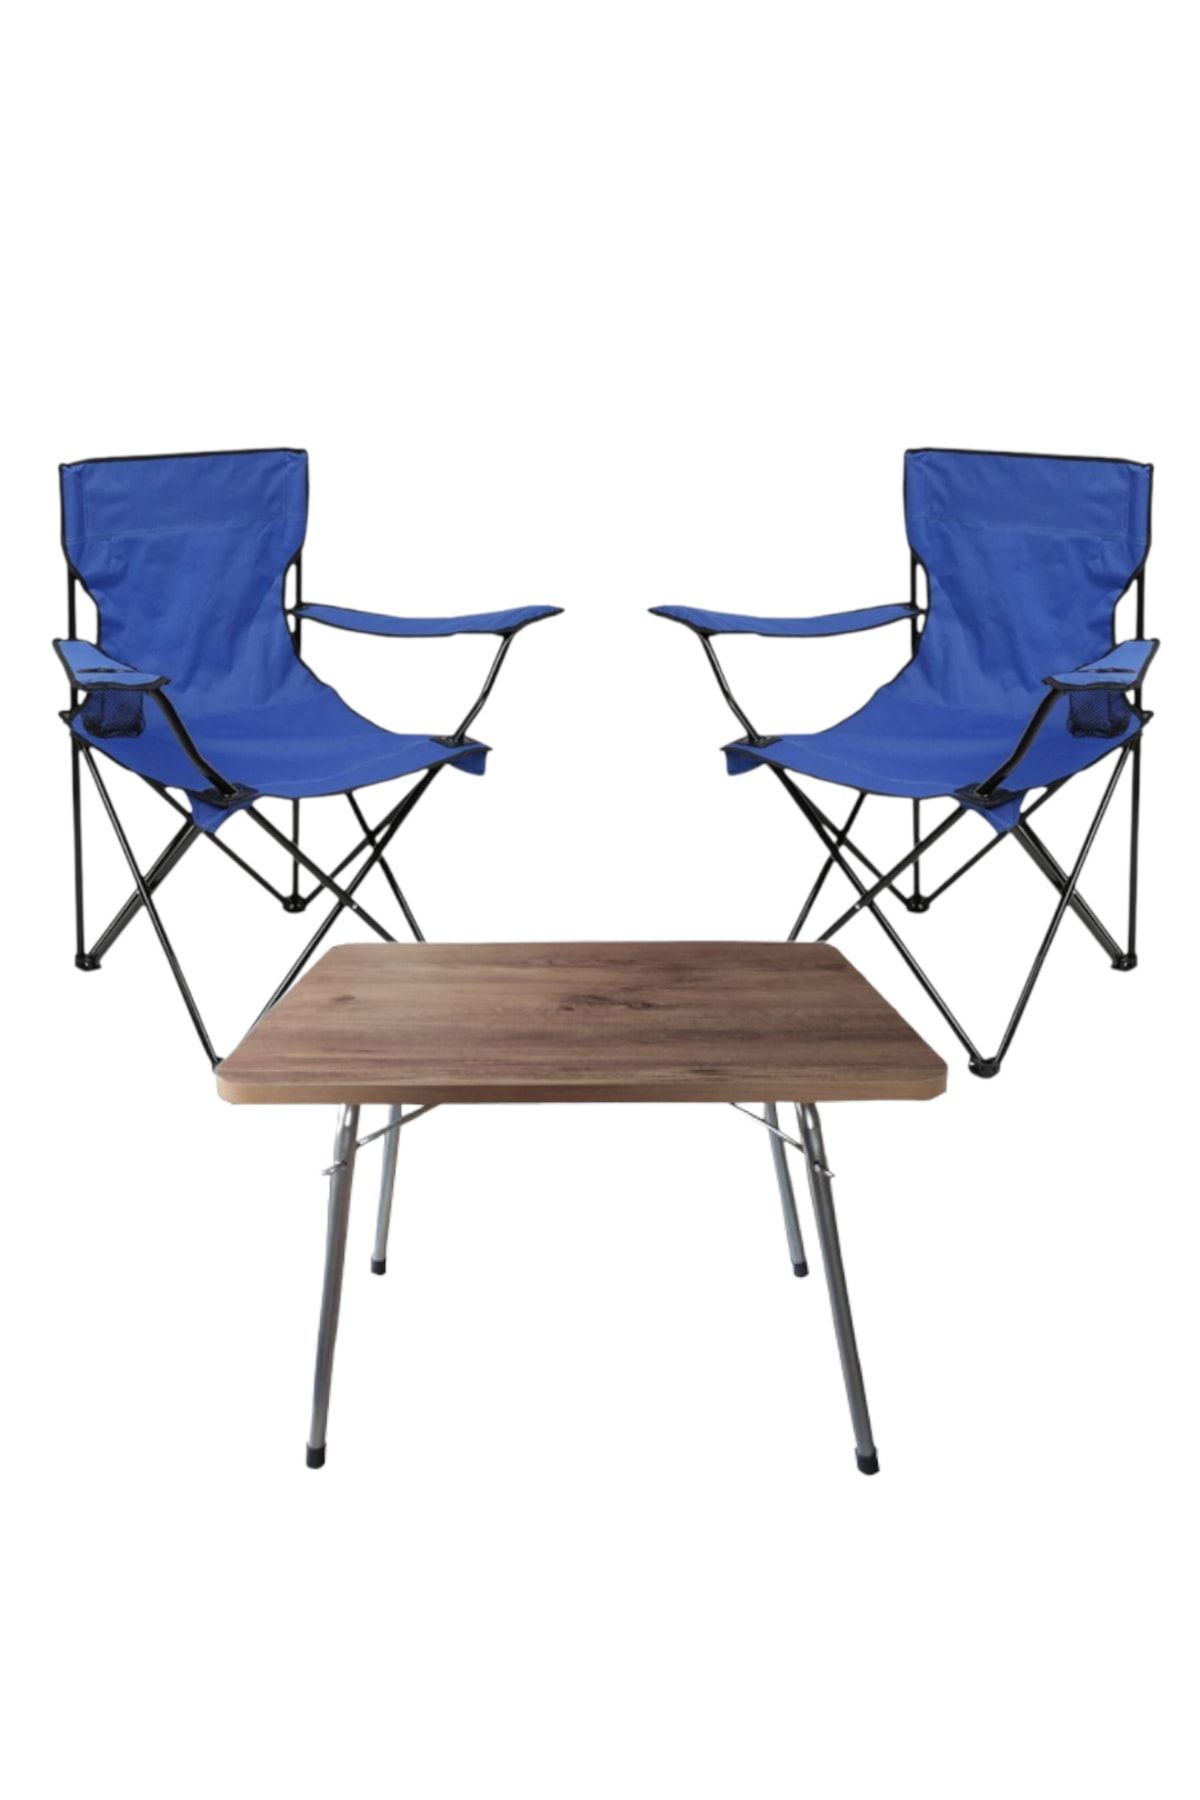 Tedarikcenter 2 Adet Katlanır Kamp Sandalyesi Mavi 1 Adet 60x45 Katlanır Kamp Masası Meşe